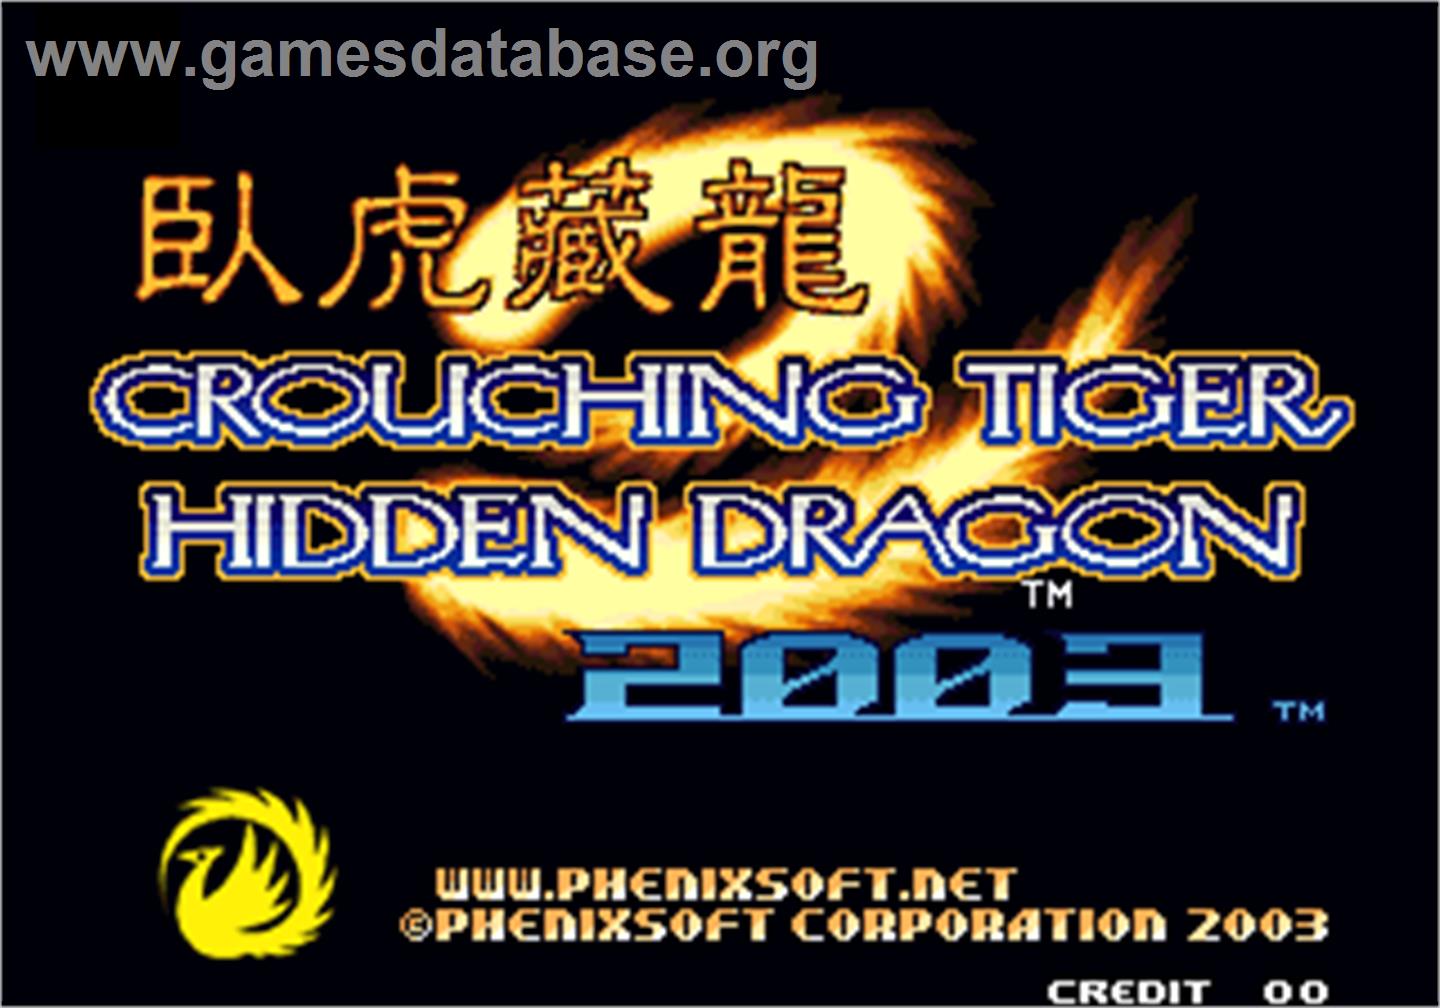 Crouching Tiger Hidden Dragon 2003 - Arcade - Artwork - Title Screen